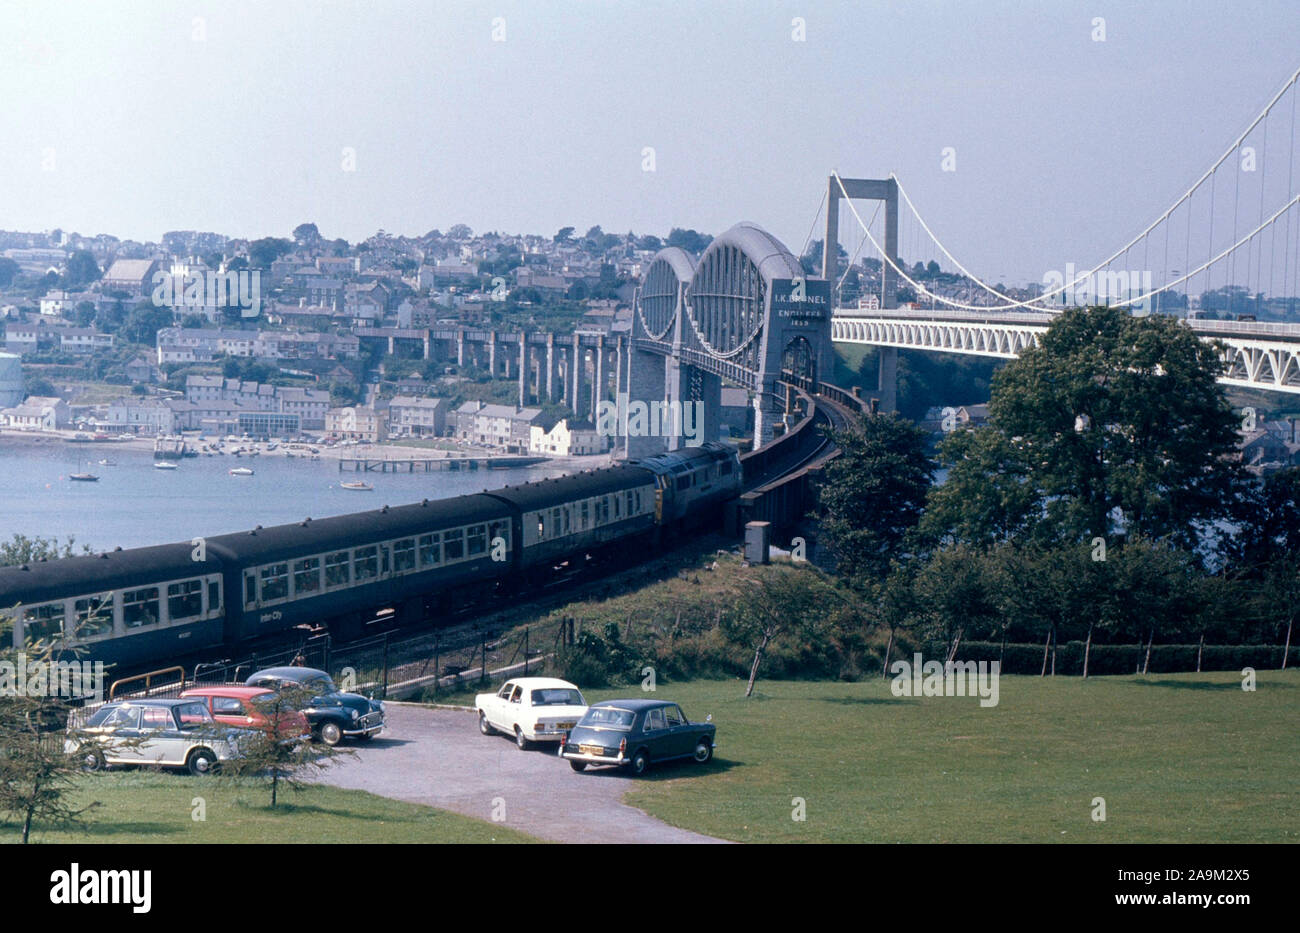 Des années 1970, British Railways train, traverser le pont Saltash de Brunel à Plymouth, Angleterre du Sud-Ouest, Royaume-Uni Banque D'Images